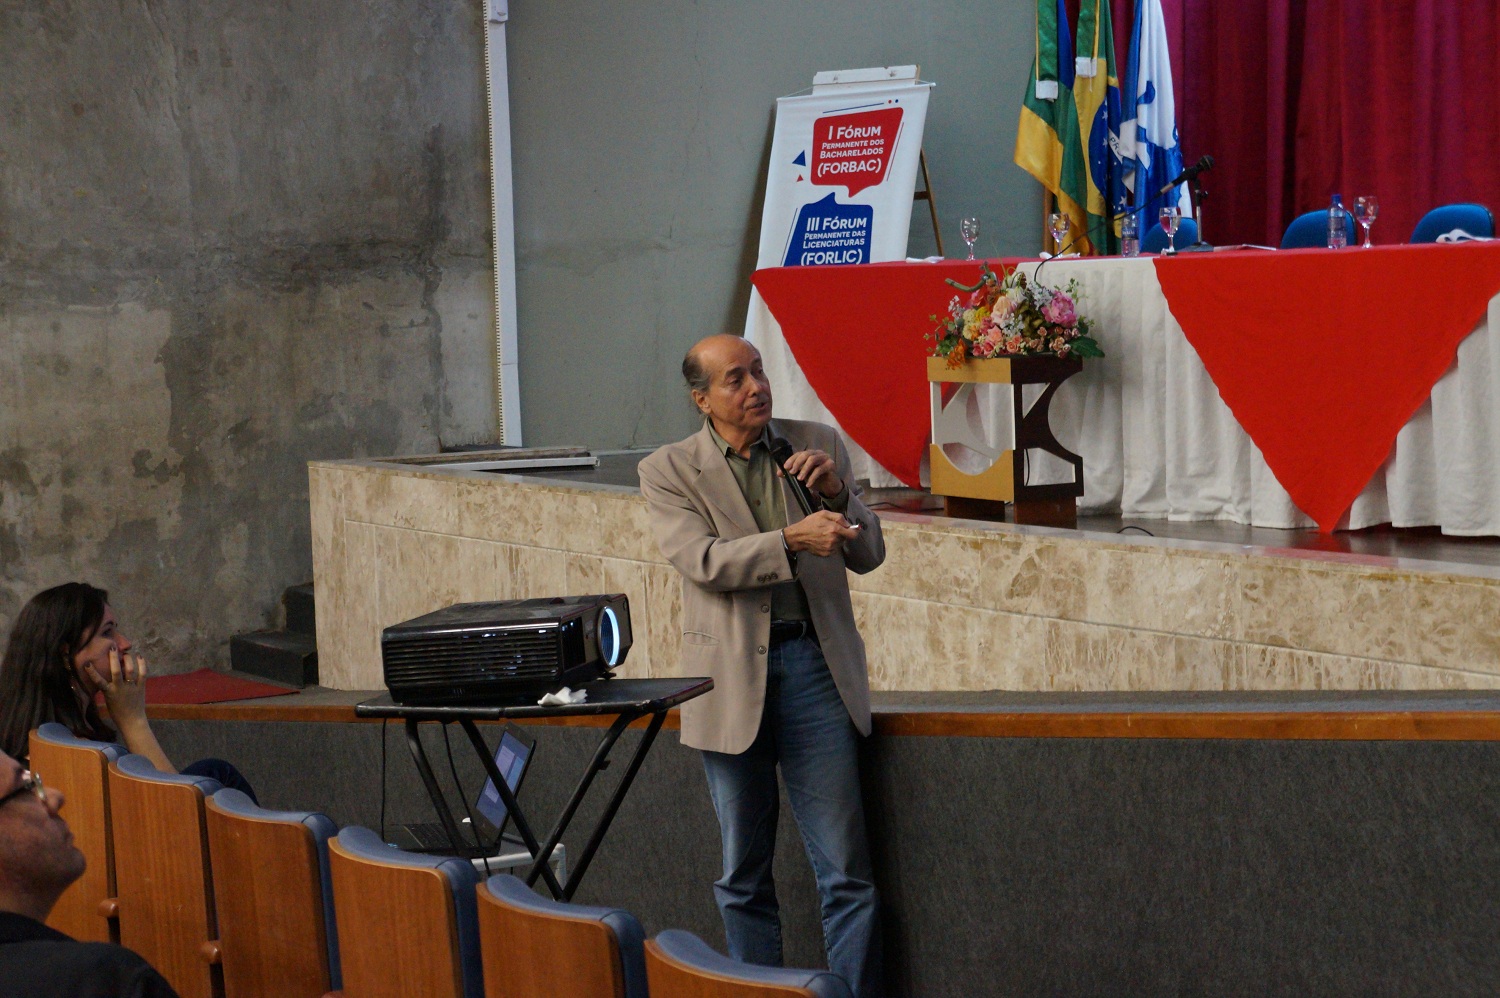 Conferência “Os desafios da educação superior no Brasil” foi proferida por Naomar de Almeida Filho, da Universidade Federal do Sul da Bahia (UFSB).